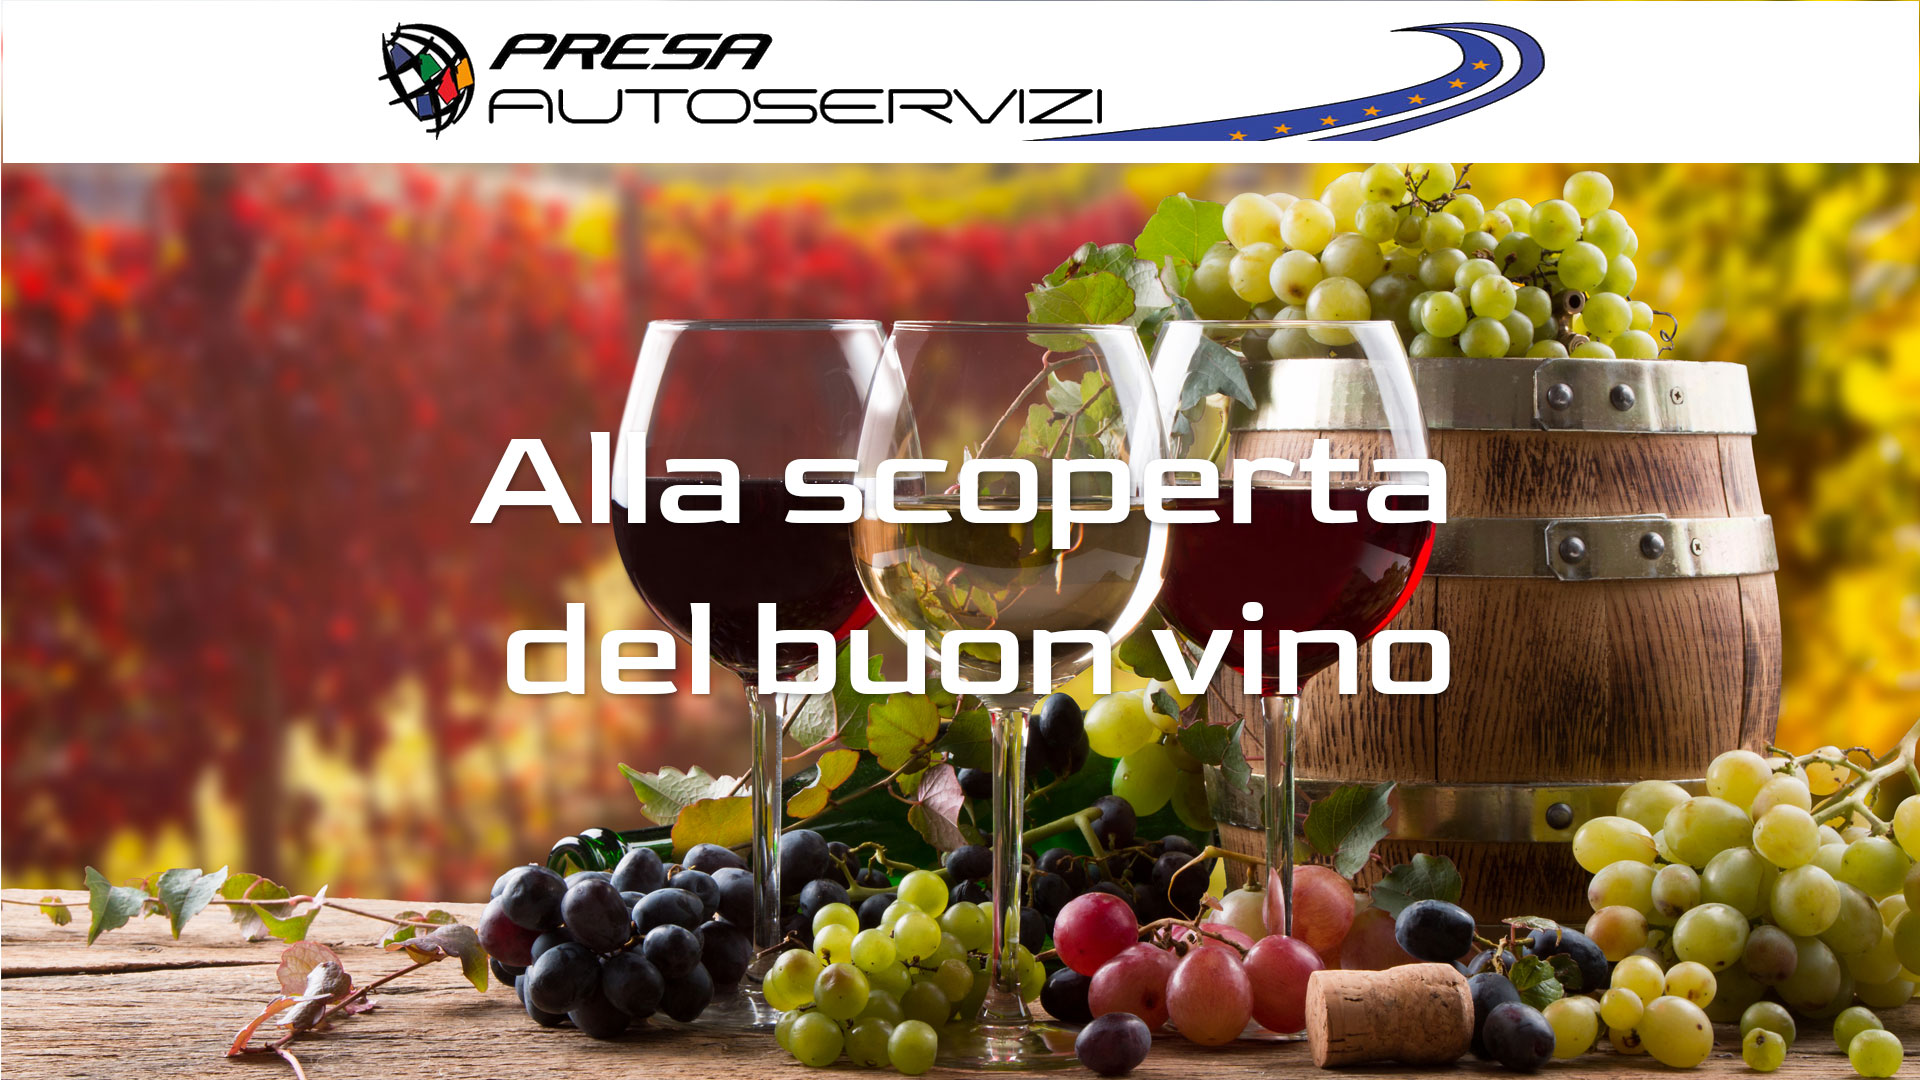 Alla scoperta del vino_Presa_Autoservizi_Ncc